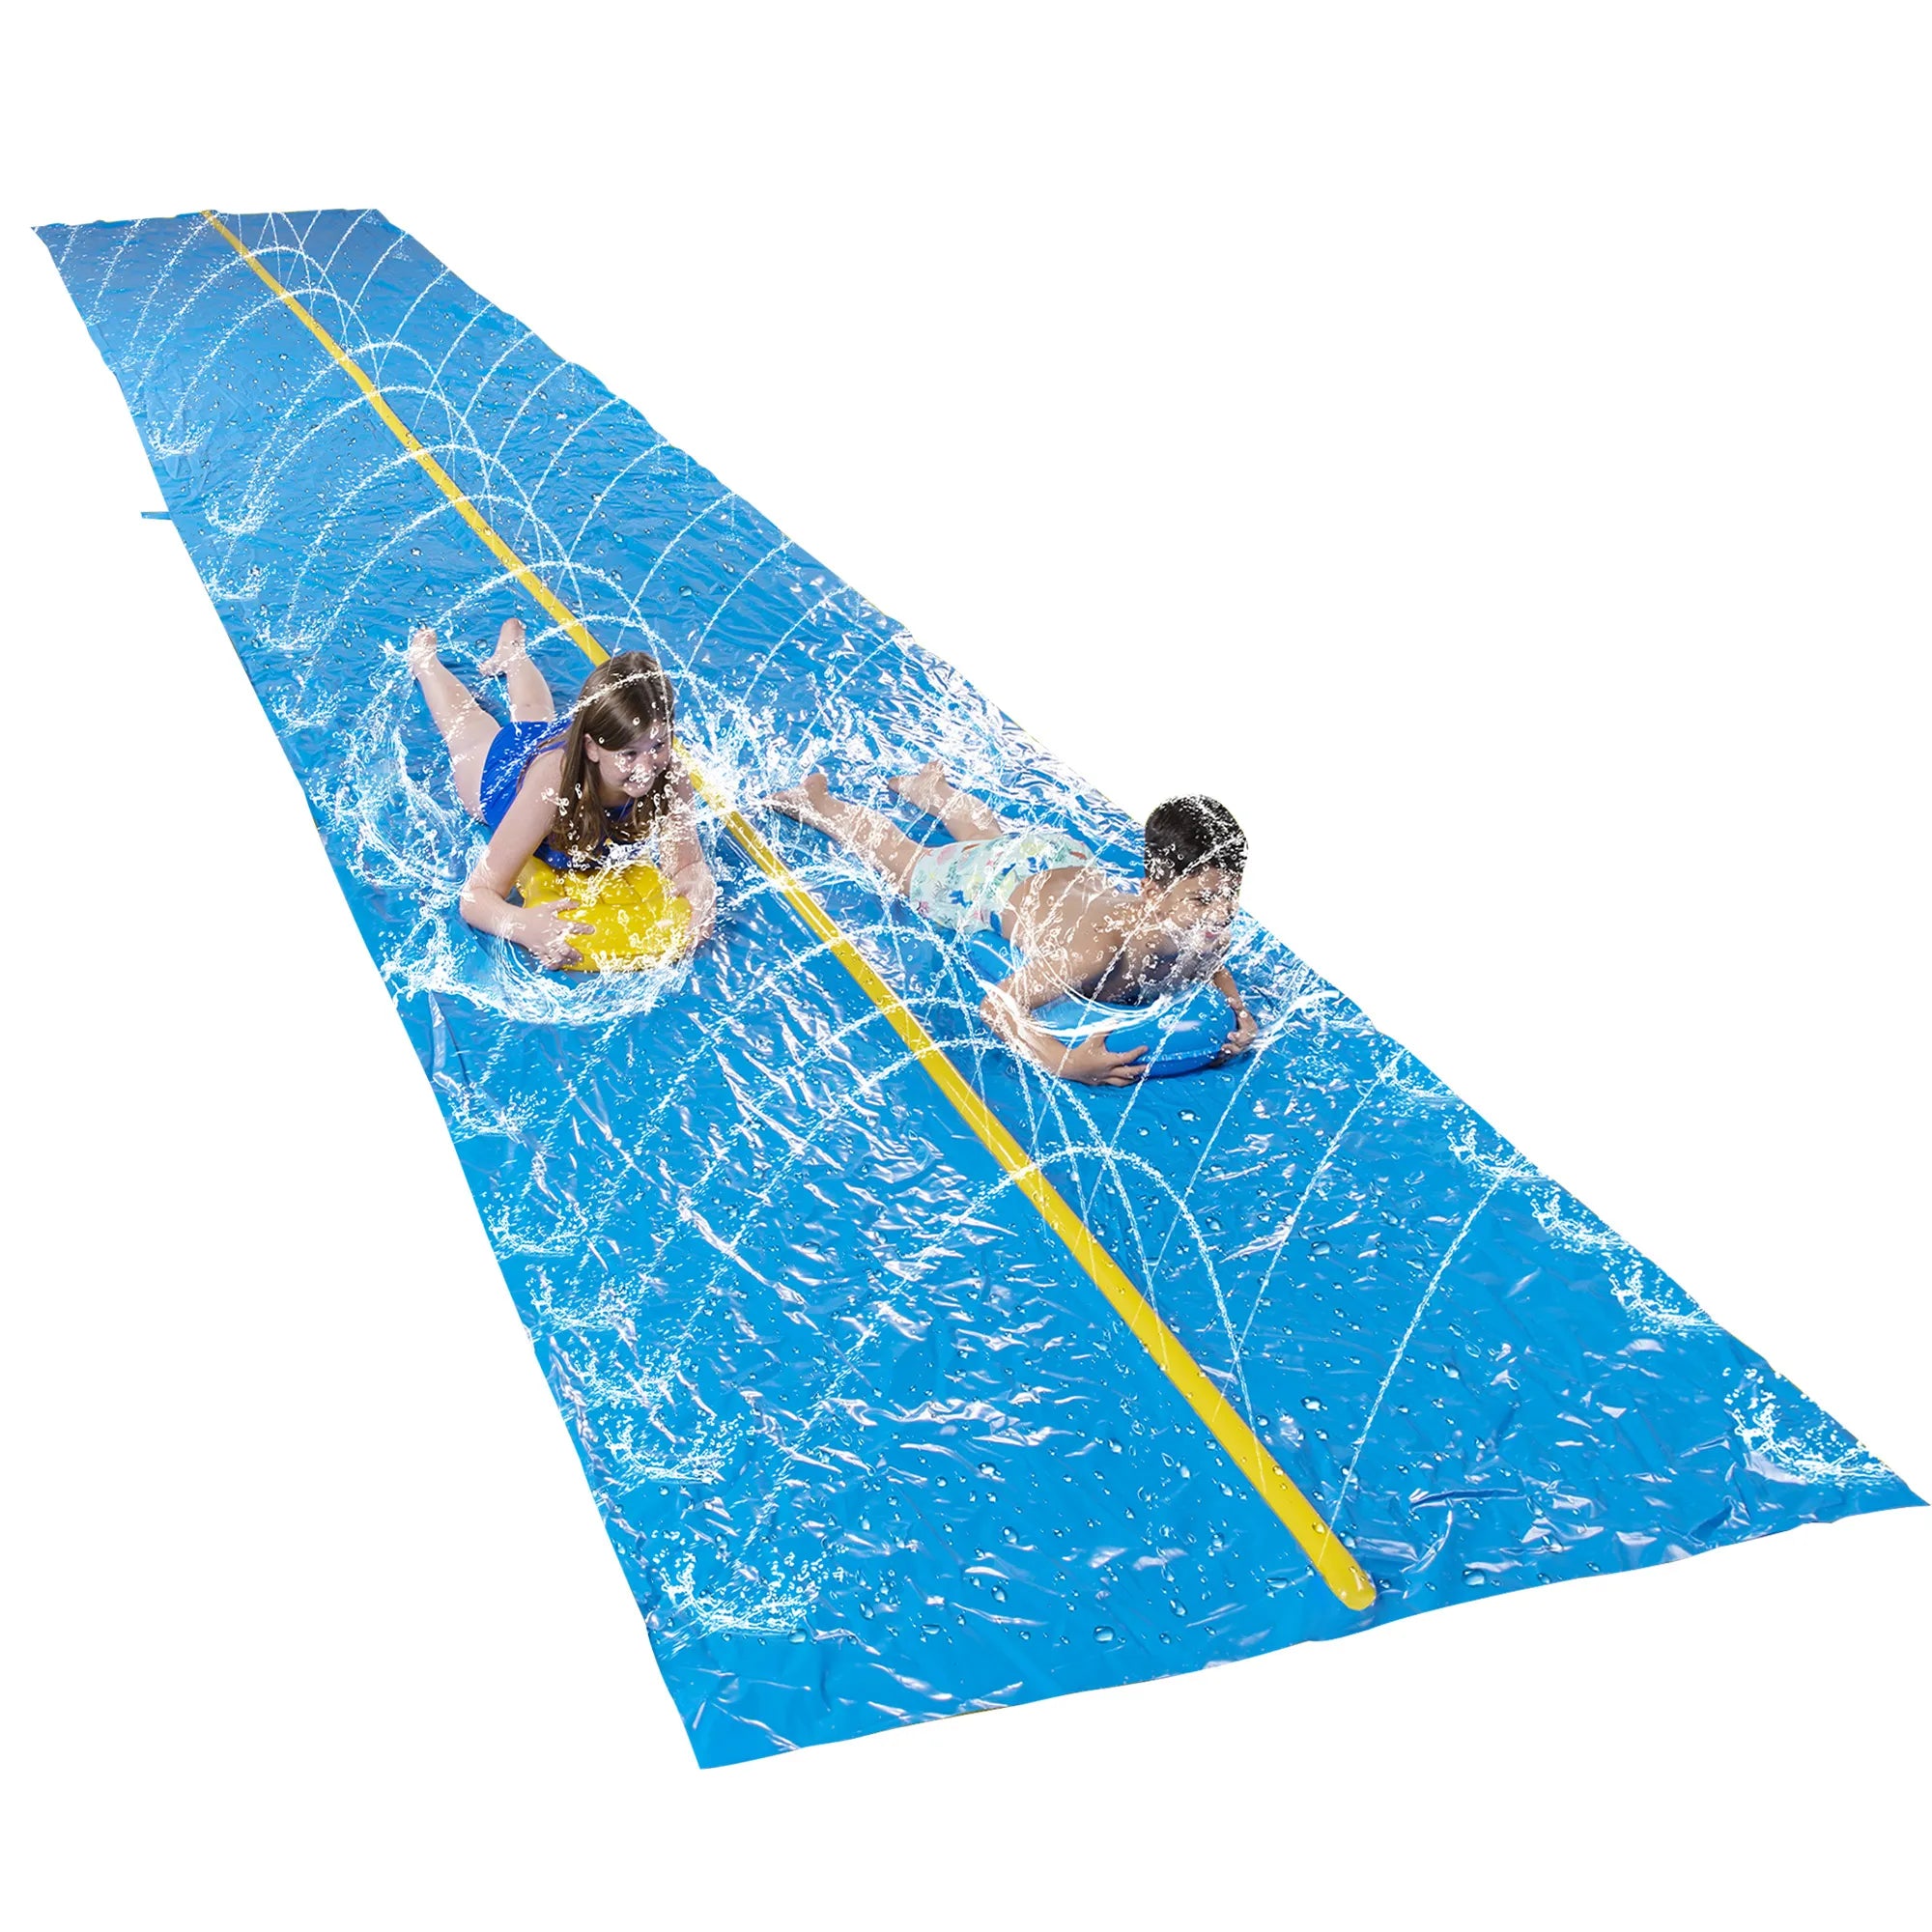 Huge Water Slide with Build-in Sprinkler 30ft x 6ft